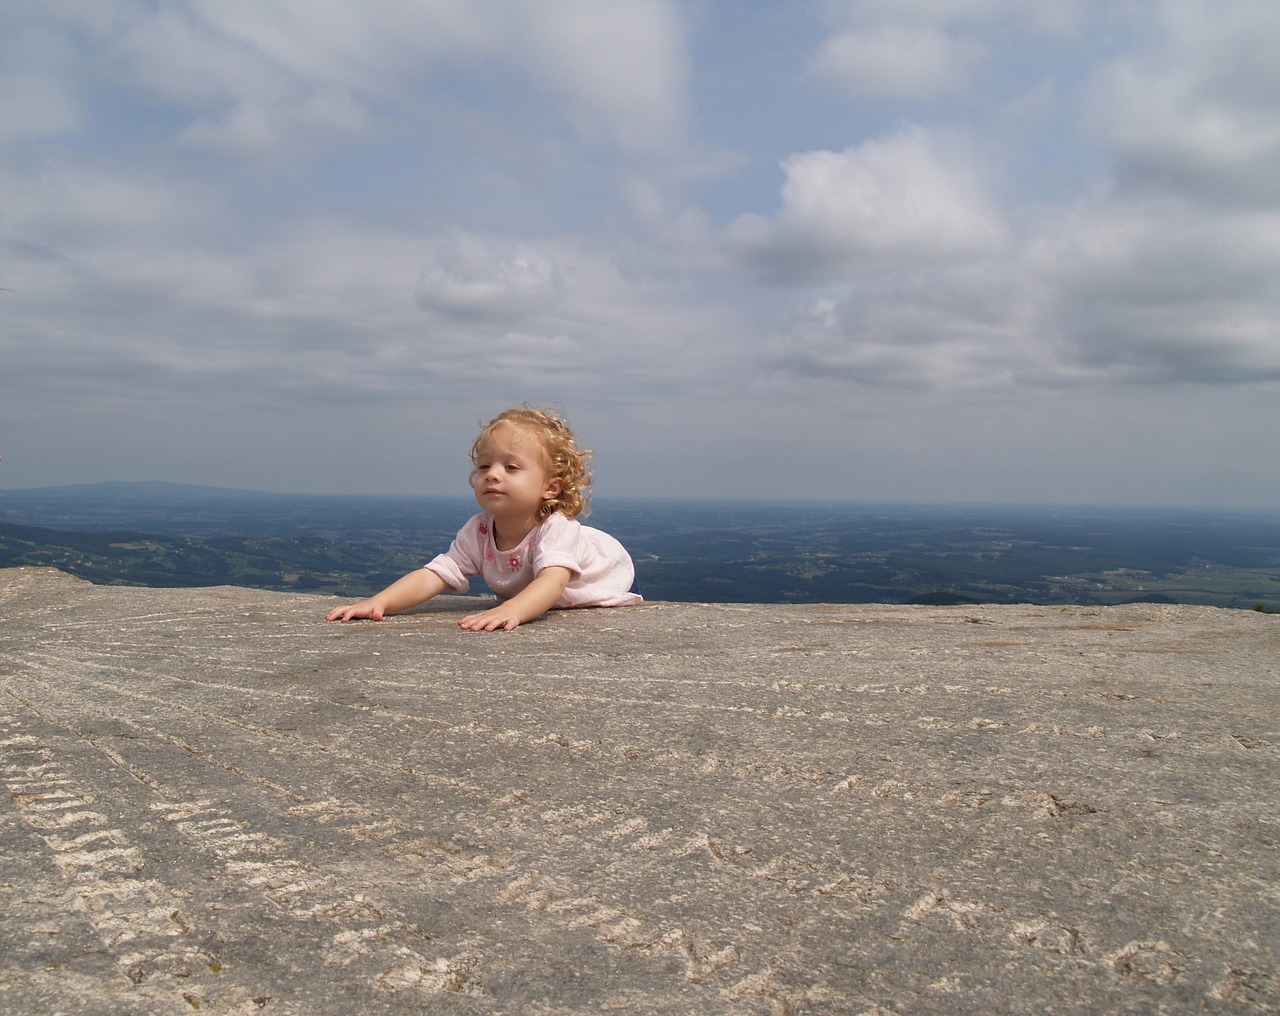 child girl mountain free photo